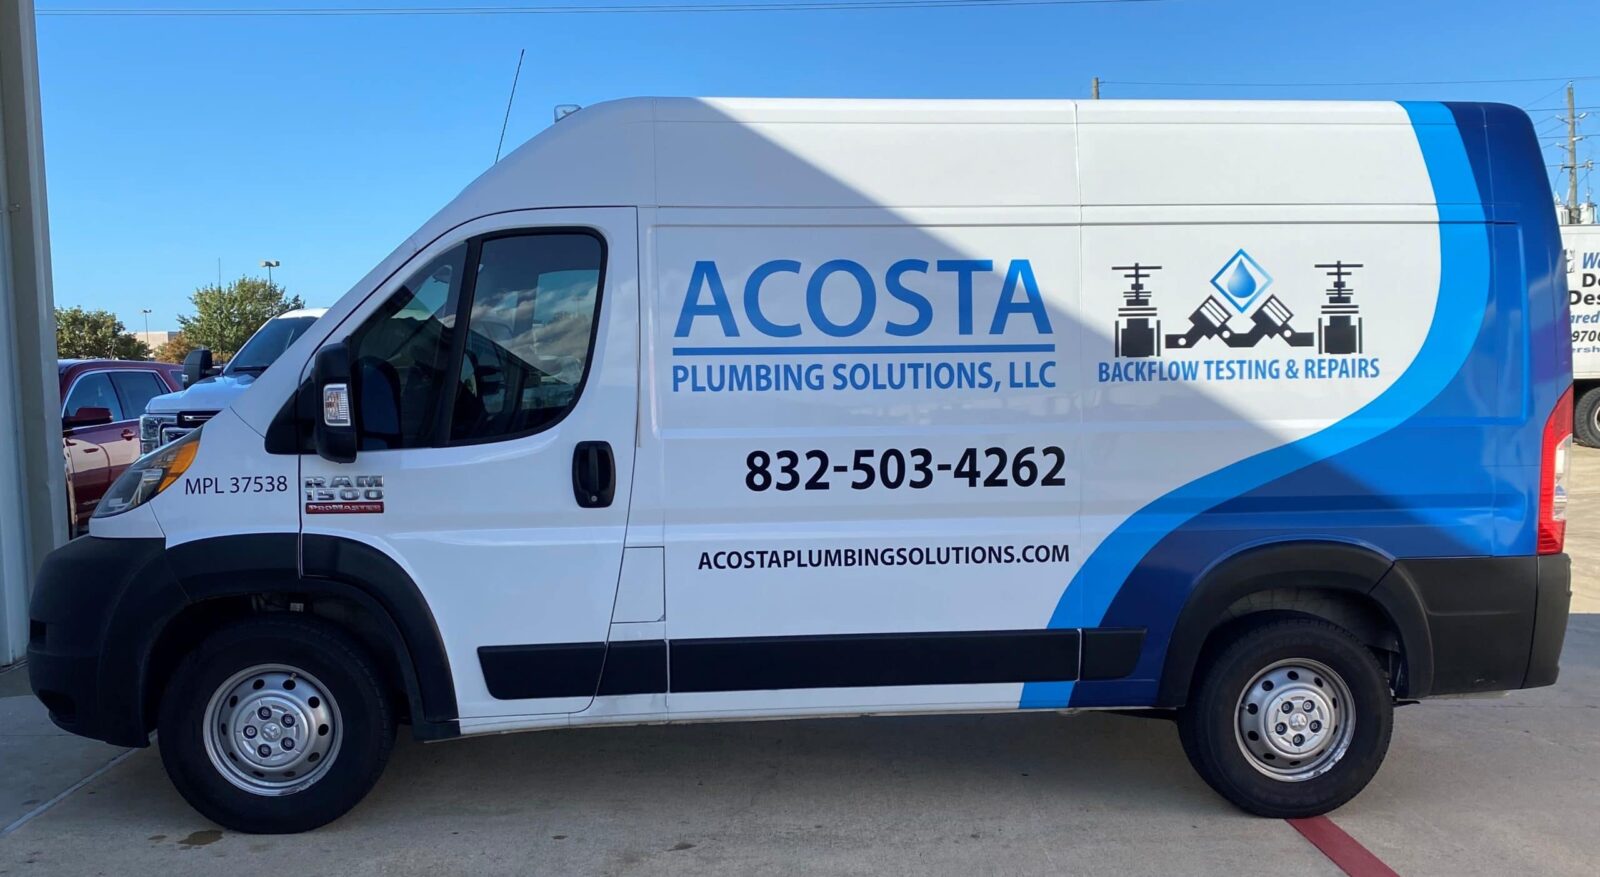 Acosta Plumbing Solutions Van